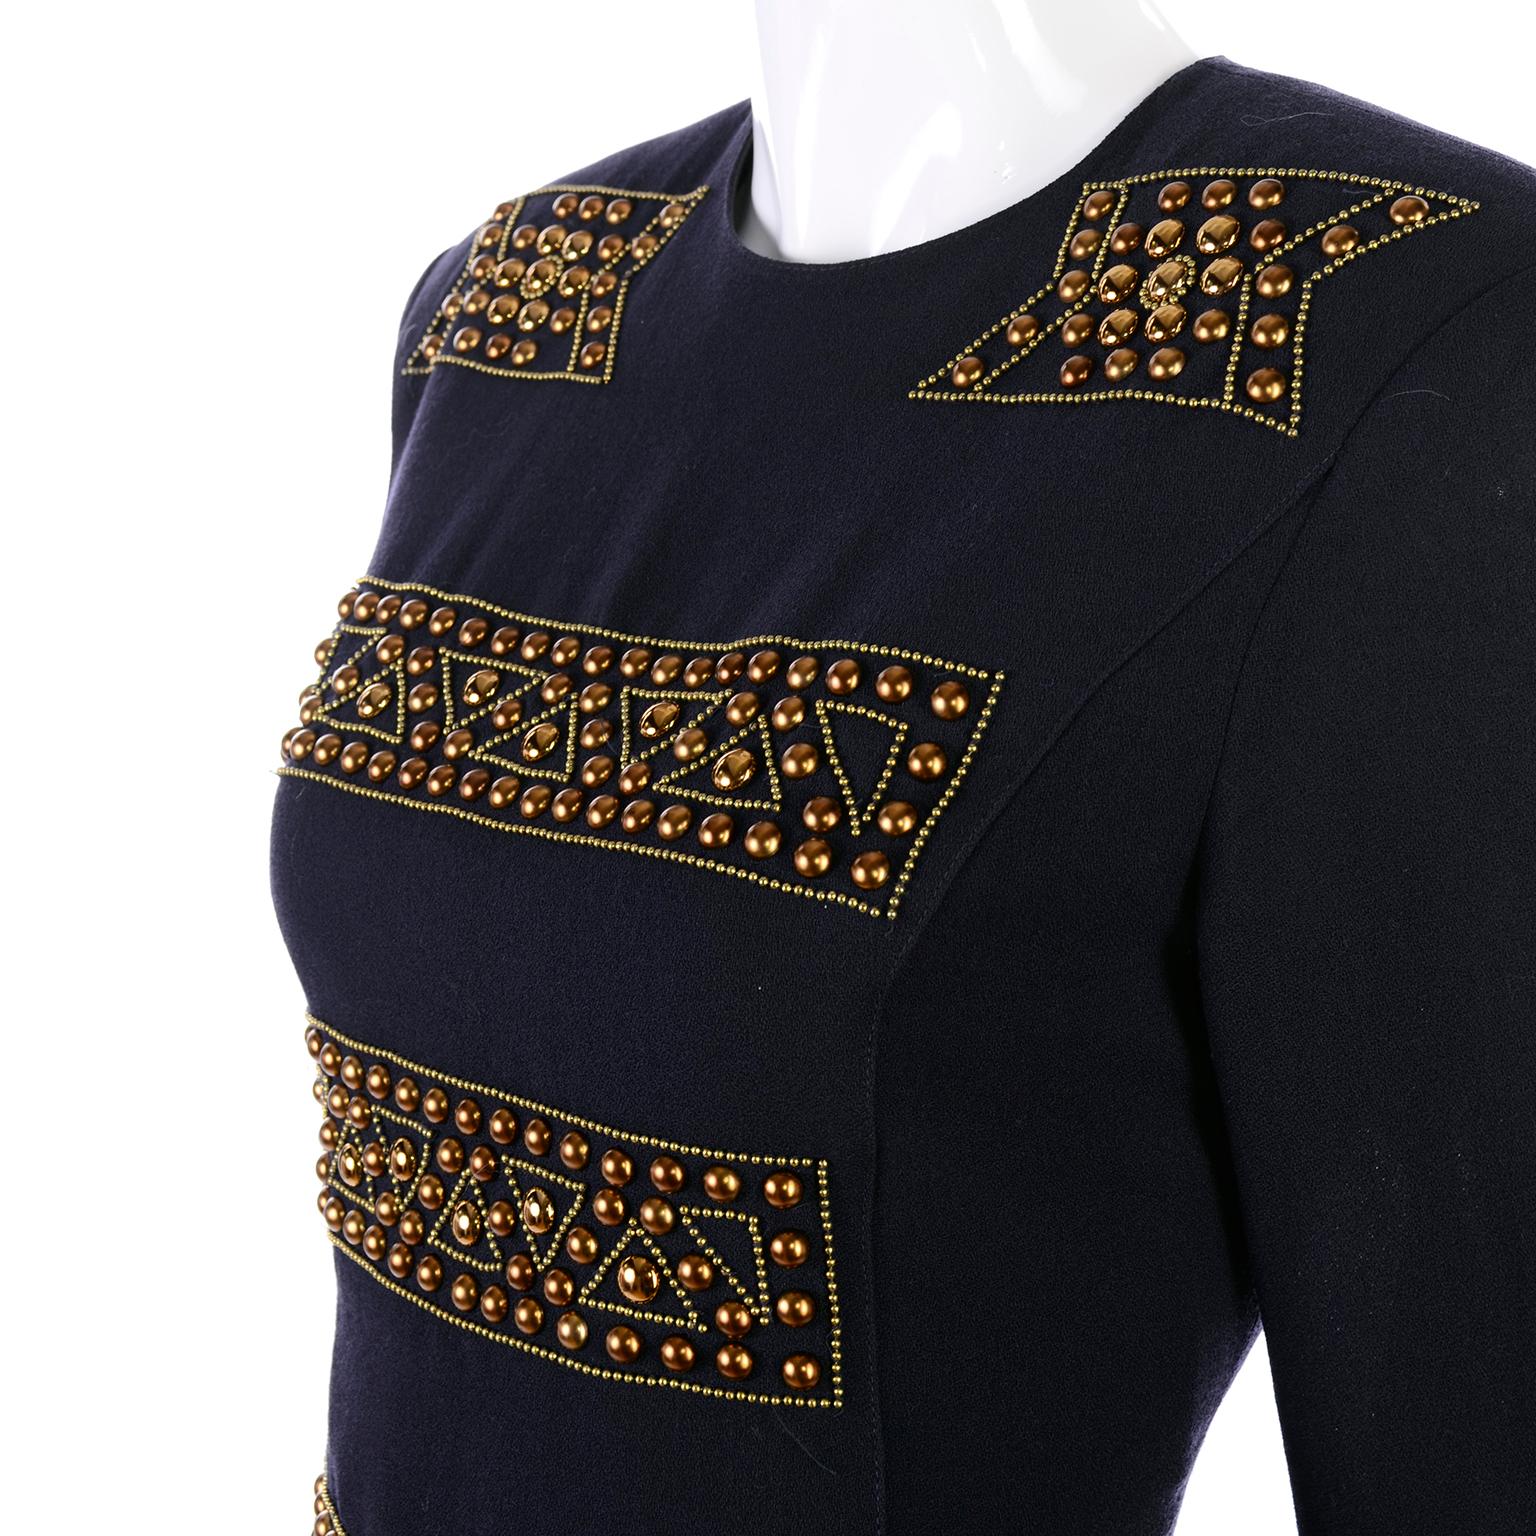 Dies ist ein lustiges Vintage-Strickkleid von Louis Feraud aus den 1980er Jahren mit langen Ärmeln in einem nachtblauen - fast schwarzen Wollstrick. Dieses Vintage-Kleid aus 100 % Wolle ist mit Viskose gefüttert und hat tolle Kupferperlen. Das Kleid